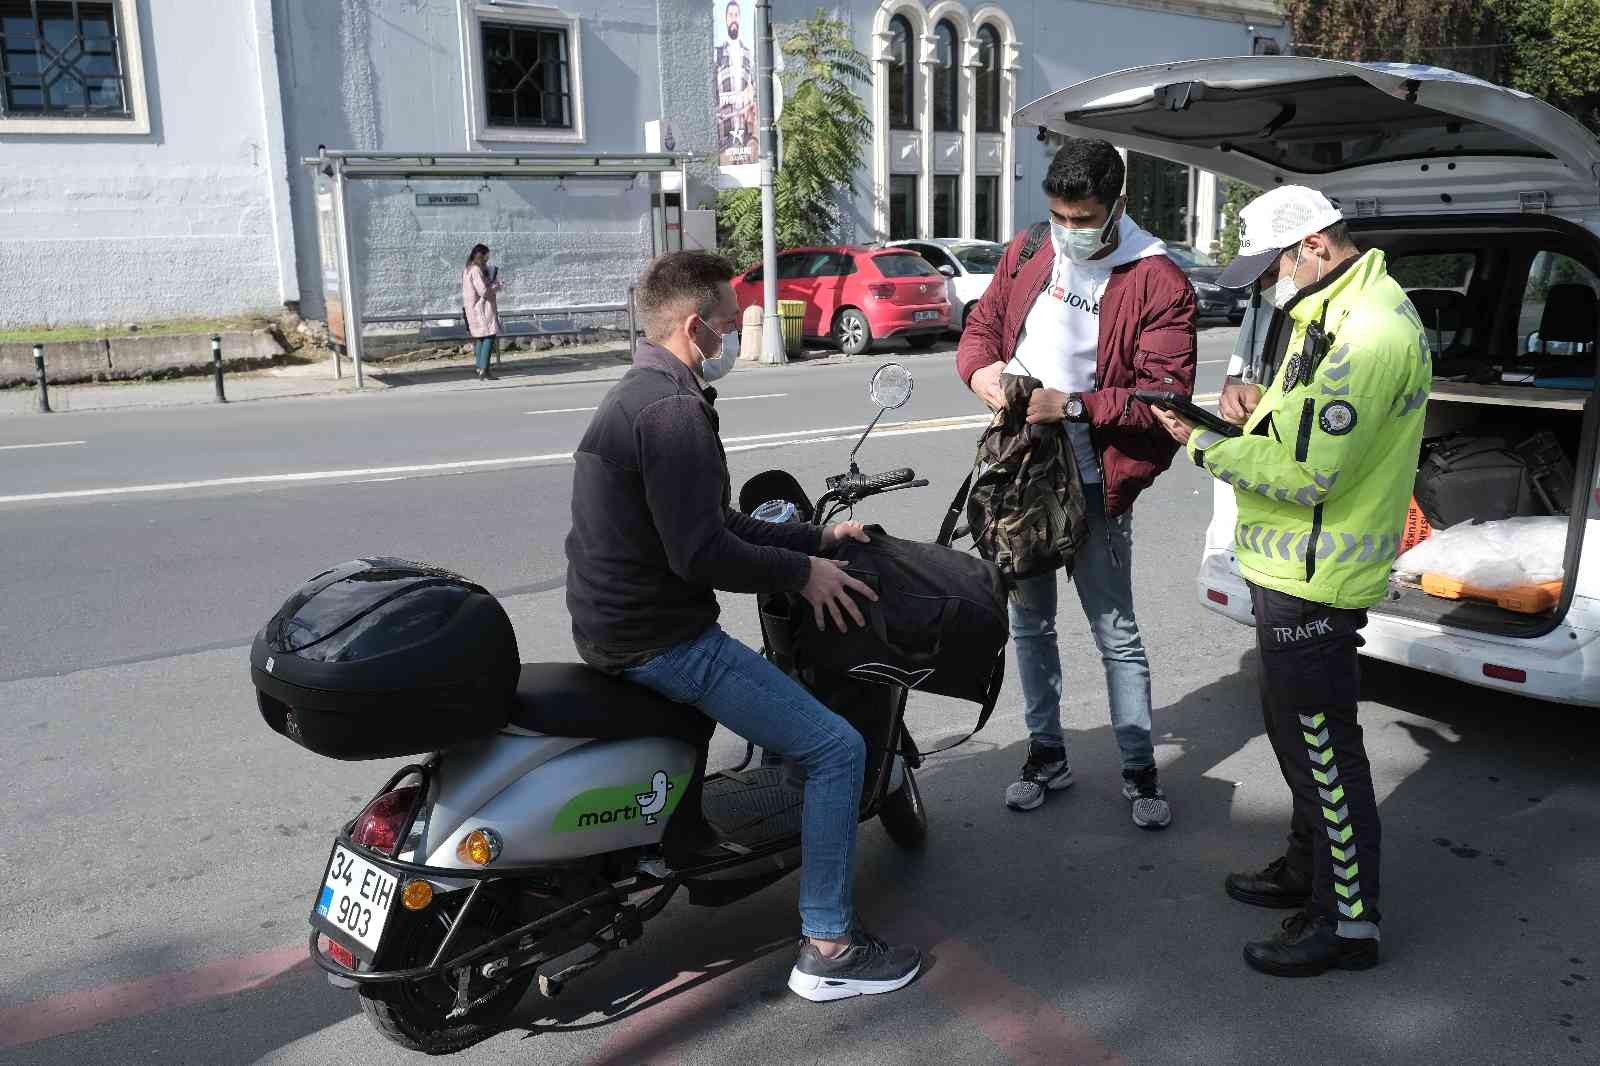 Kuruçeşme’de elektrikli scooter denetimi #istanbul